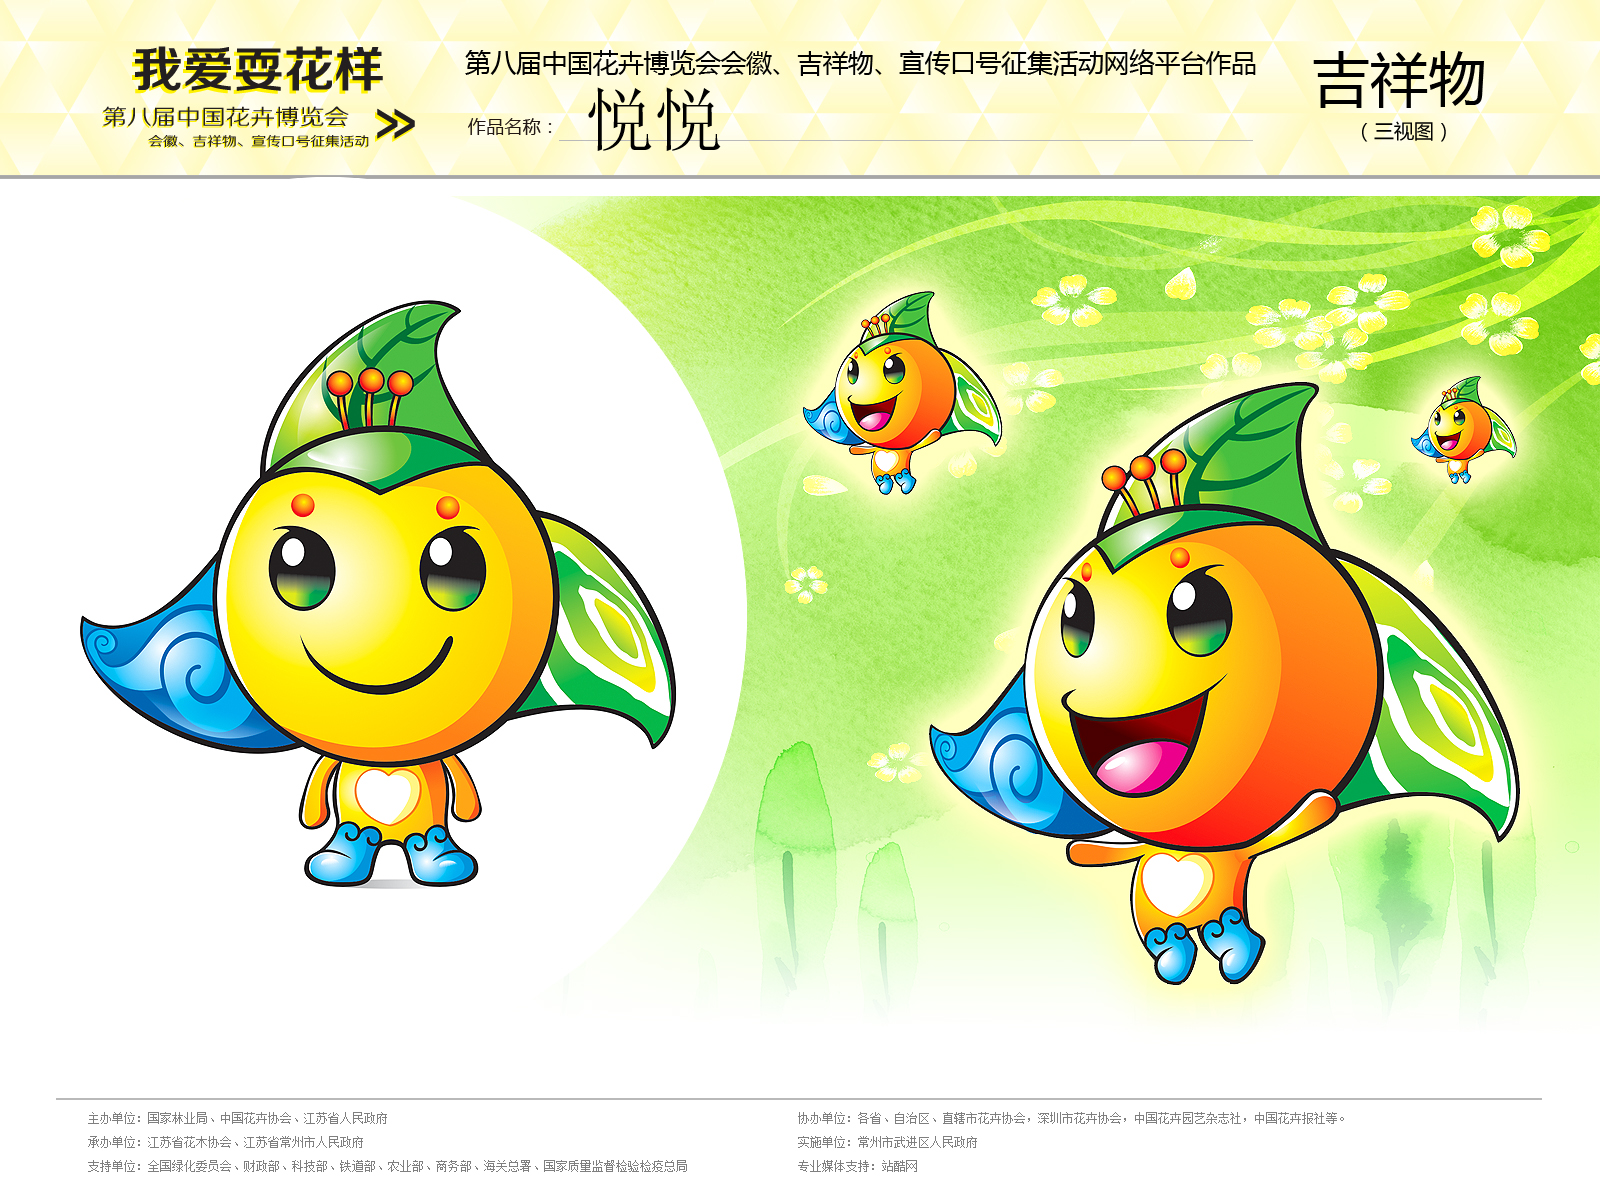 第八届中国花博会会徽,吉祥物,宣传口号网络征集 吉祥物名"悦悦"寓意